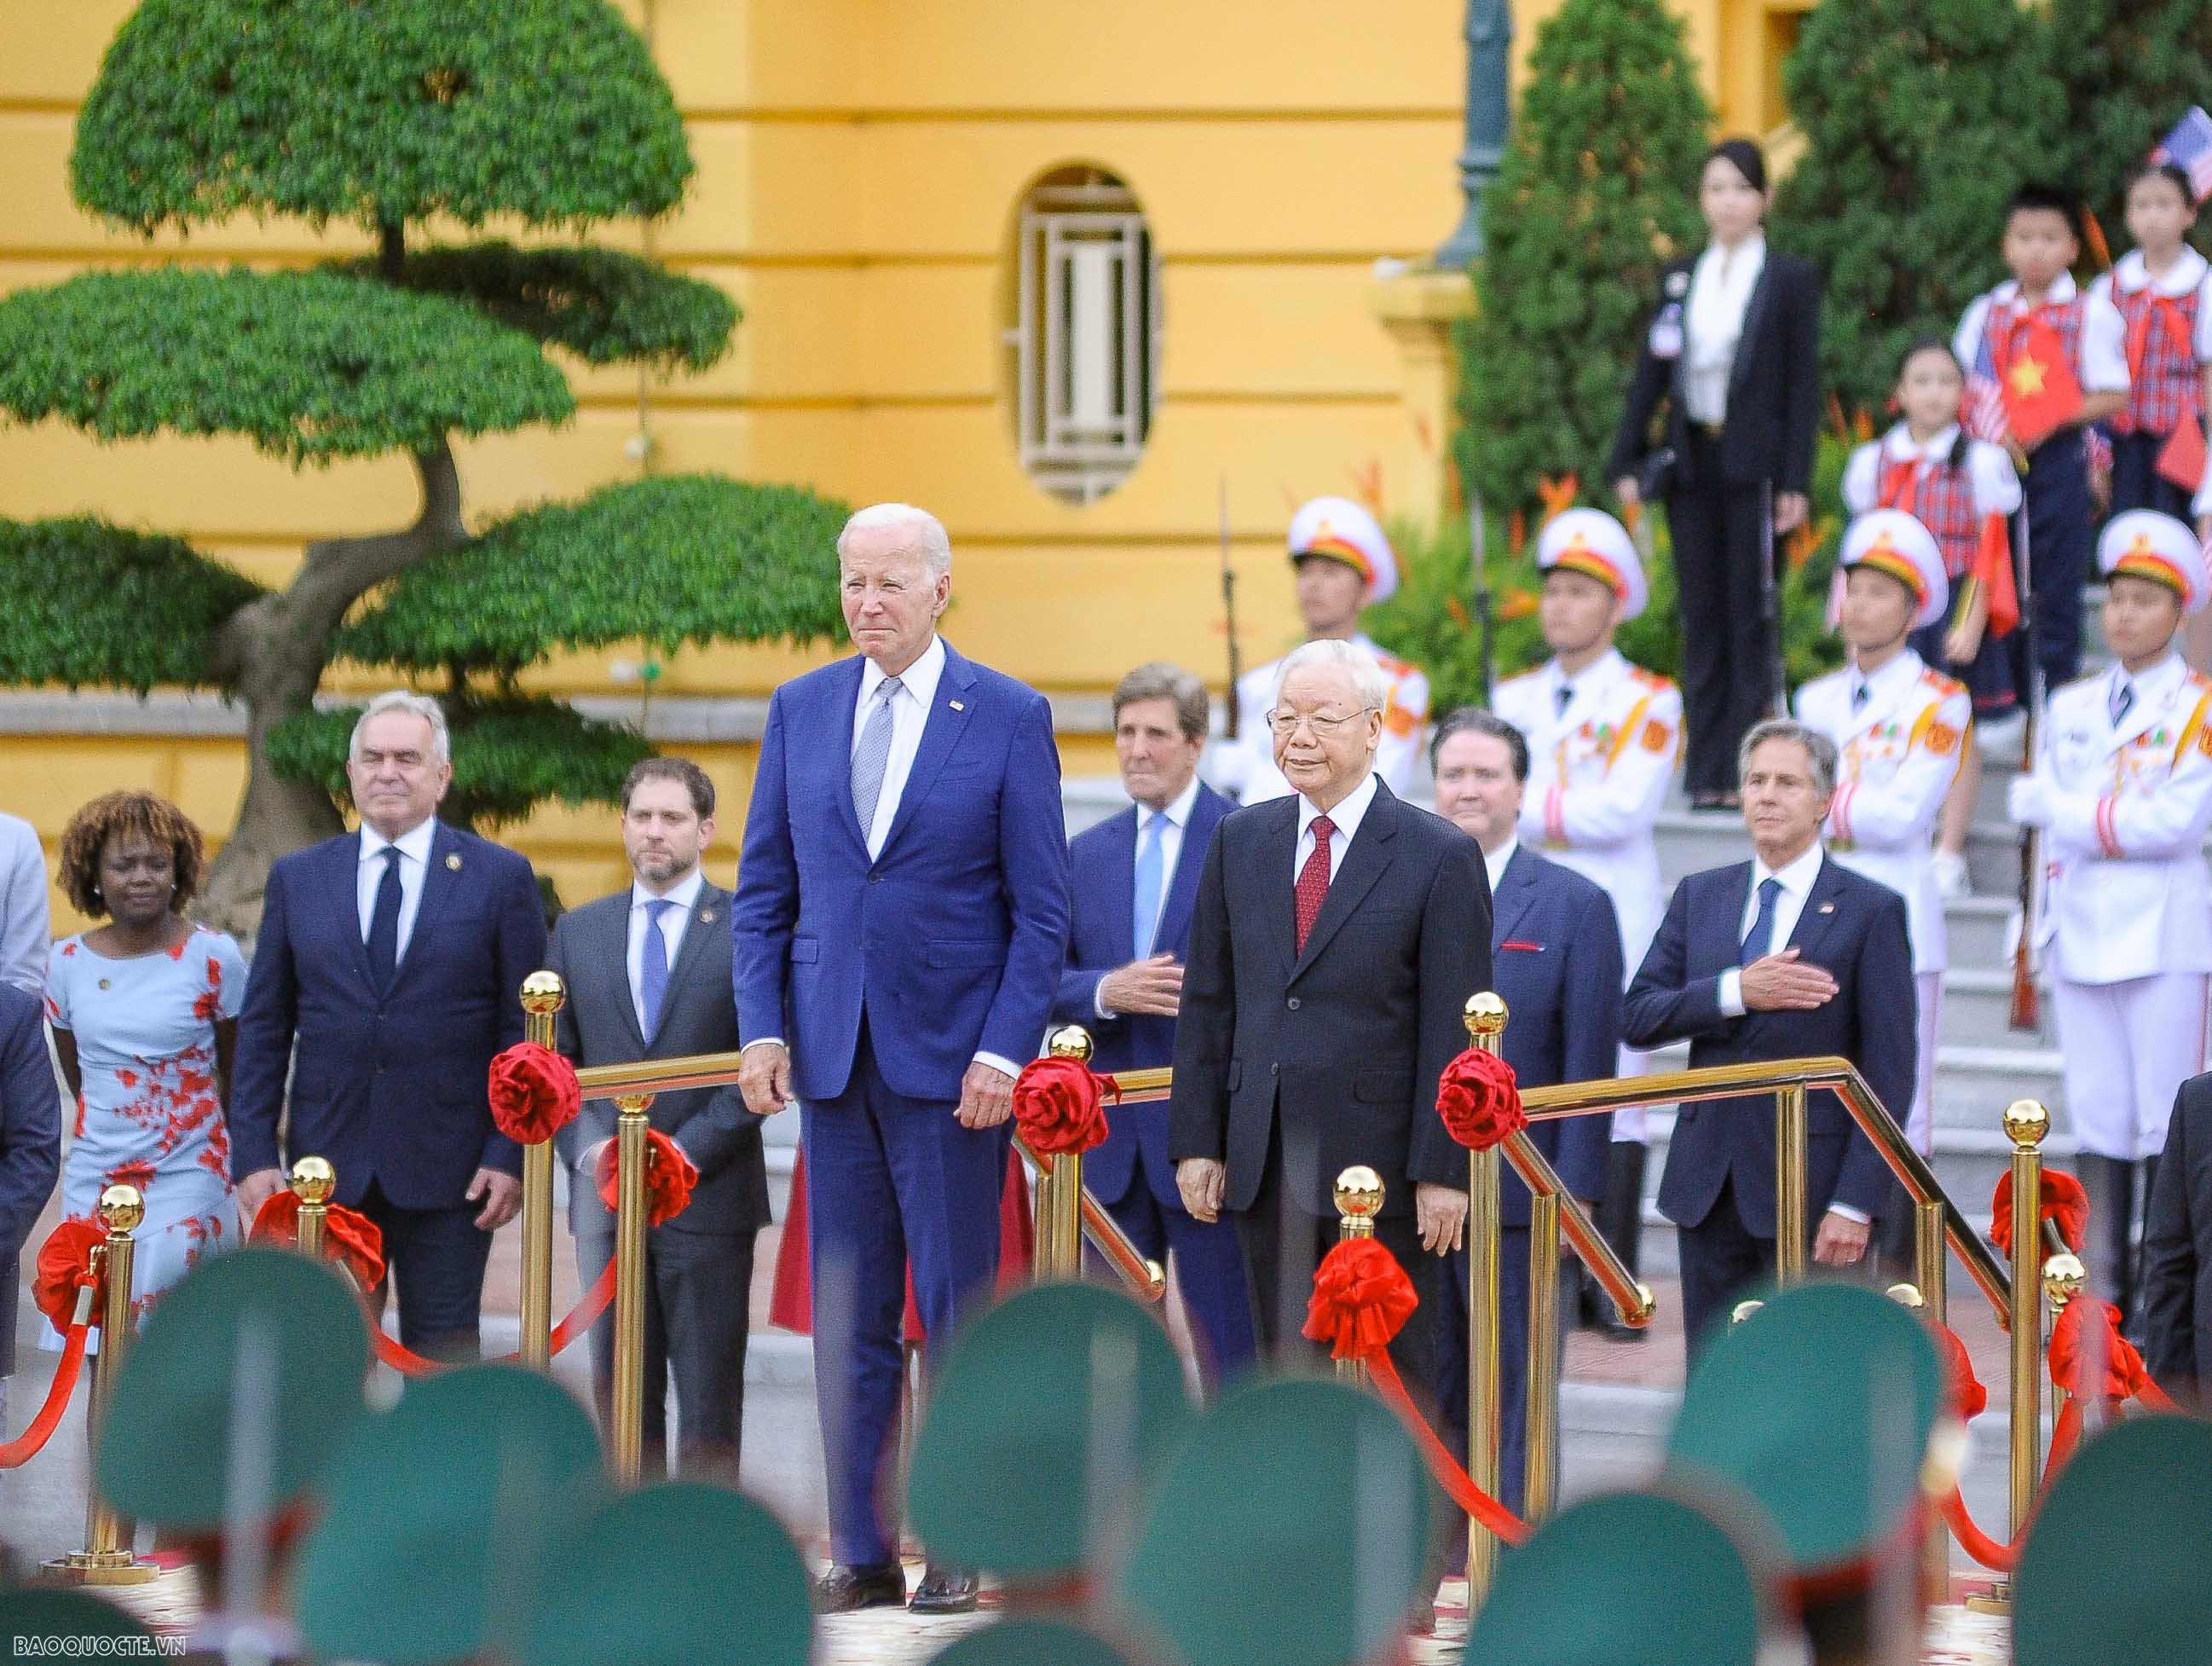 Ngay sau khi đến Hà Nội, Tổng thống Hoa Kỳ Joe Biden đã dự lễ đón chính thức do Tổng Bí thư Nguyễn Phú Trọng chủ trì, tại Phủ Chủ tịch.